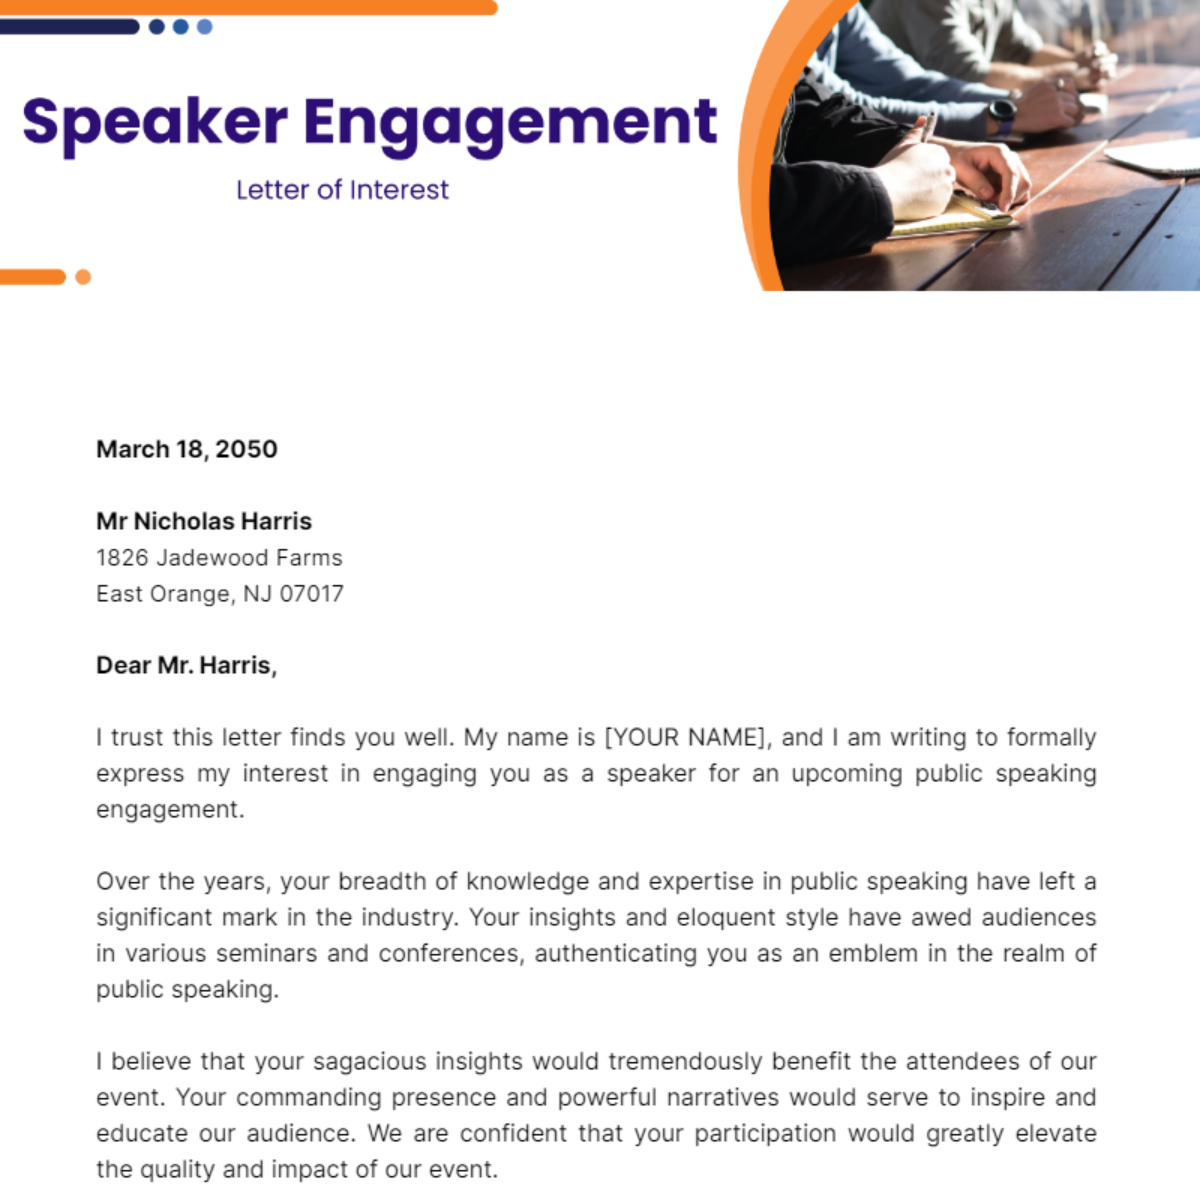 Speaker Engagement Letter of Interest Template